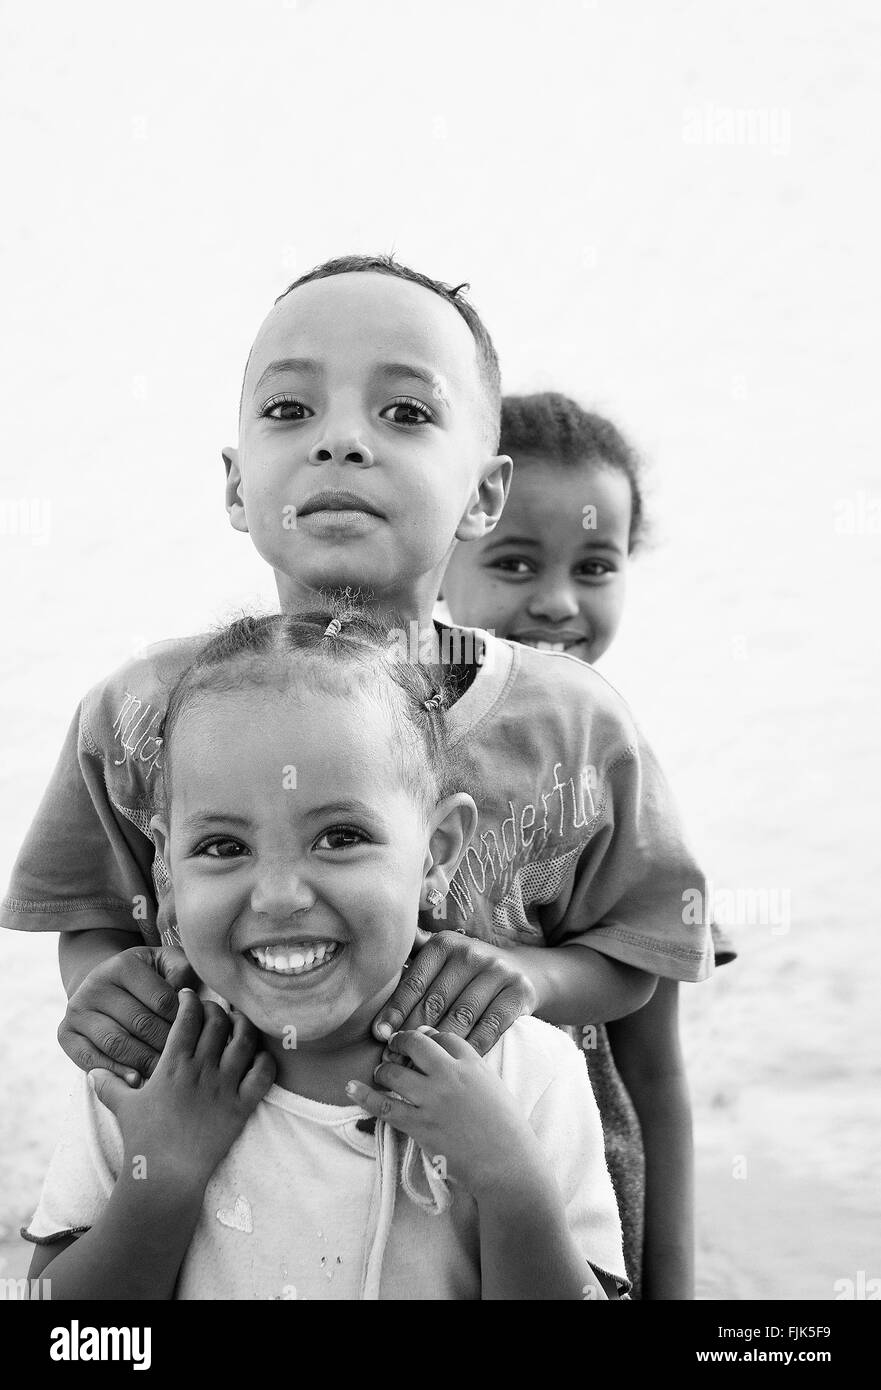 Happy smiling kids africains éthiopiens à Harar en Éthiopie, près de la frontière de la somalie Banque D'Images